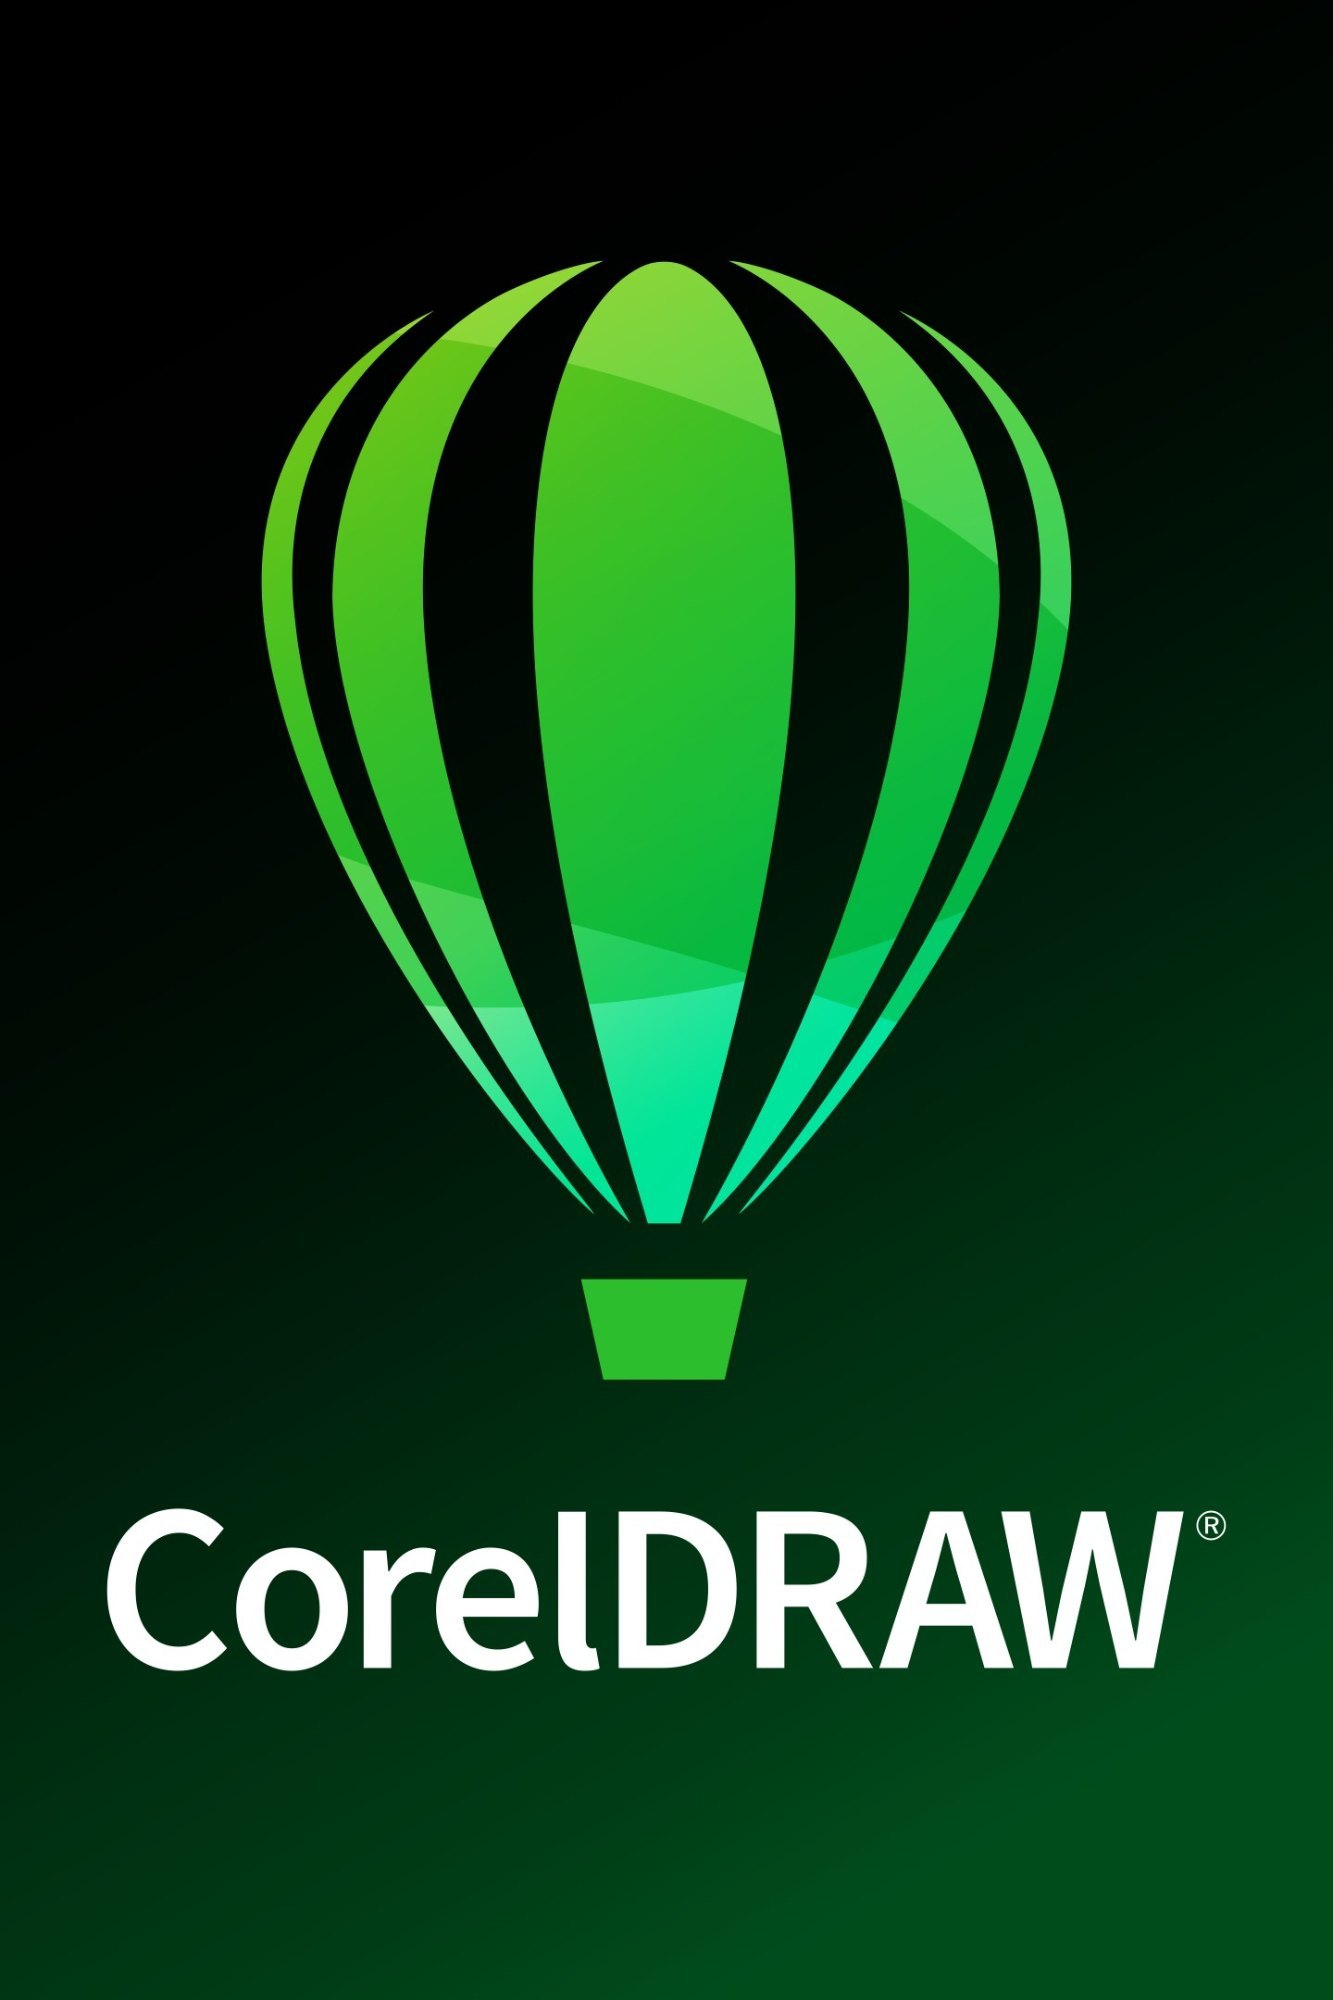 Corel Draw Course in Vizag